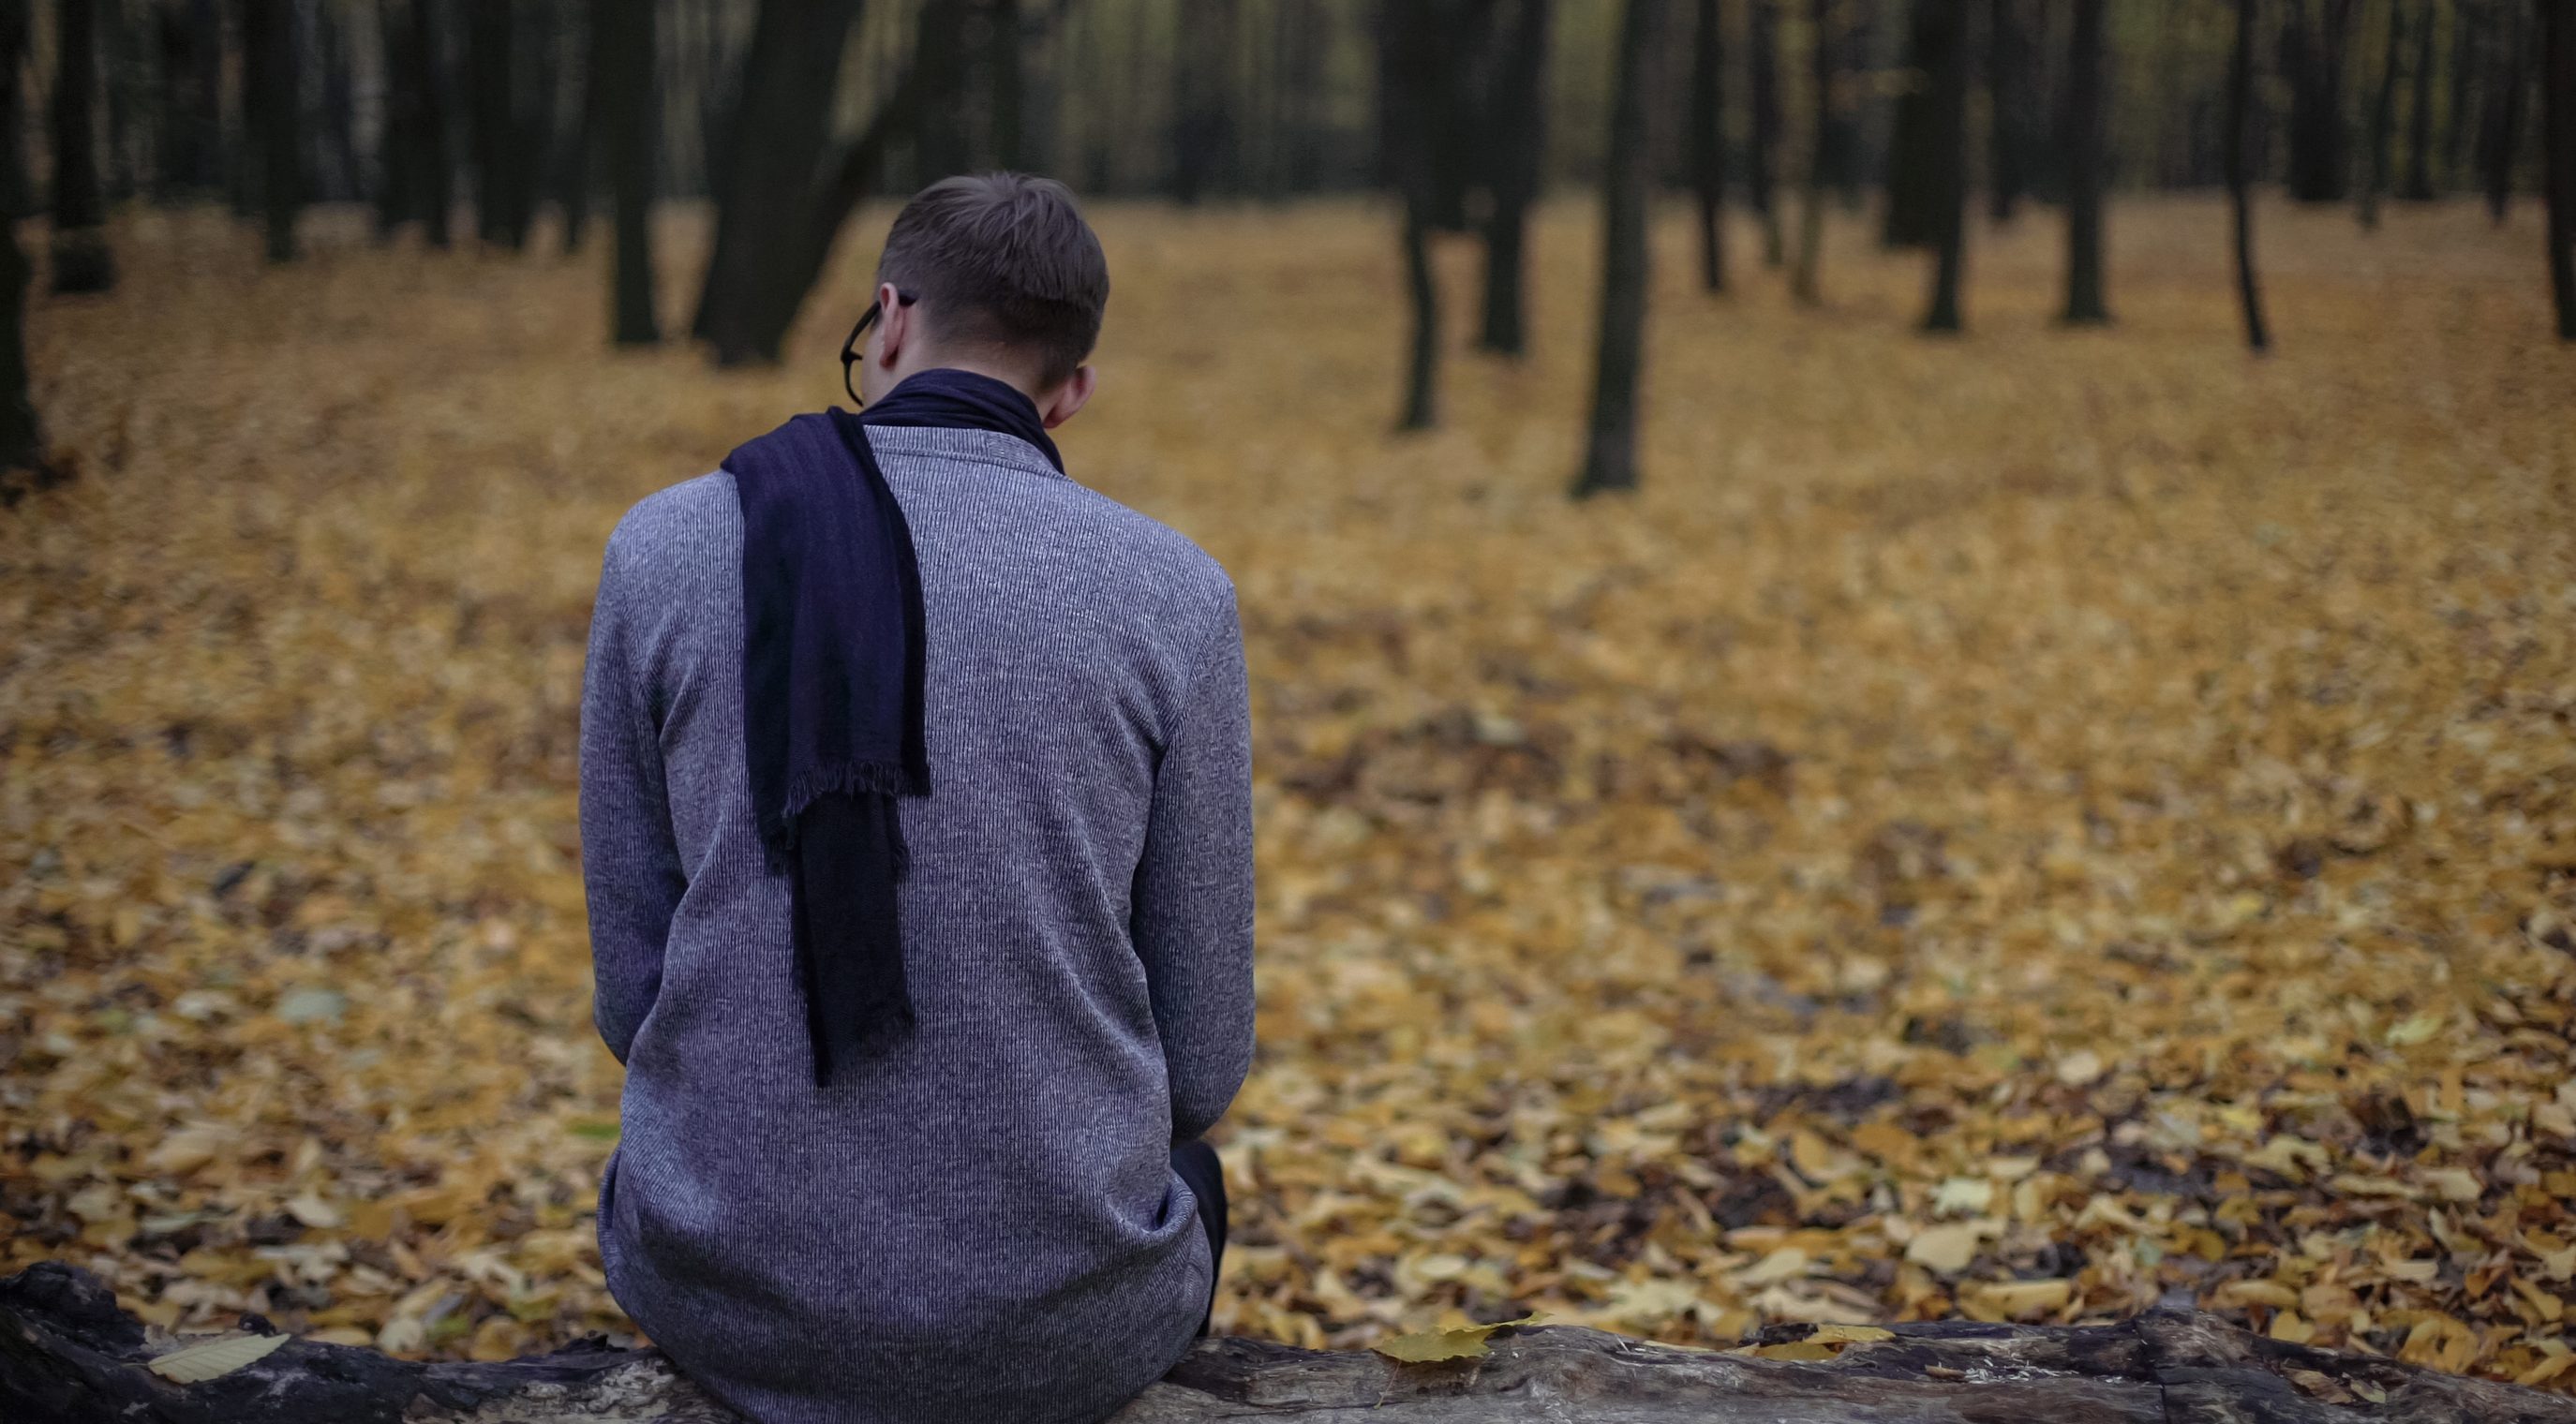 Думки про самогубство, байдужість, втрата апетиту та сну: що потрібно знати про сезонну депресію